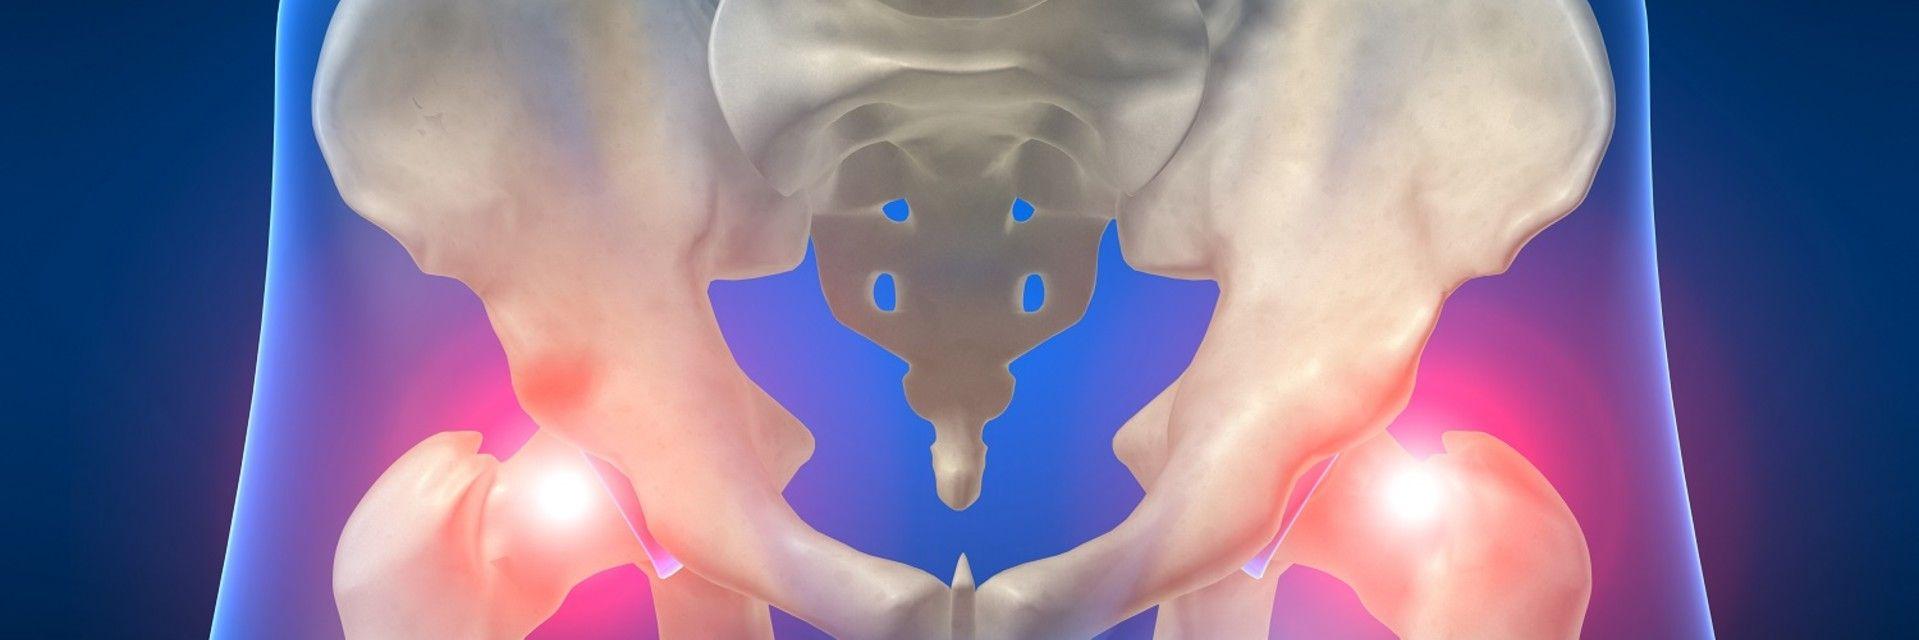 hip-osteoarthritis-pain